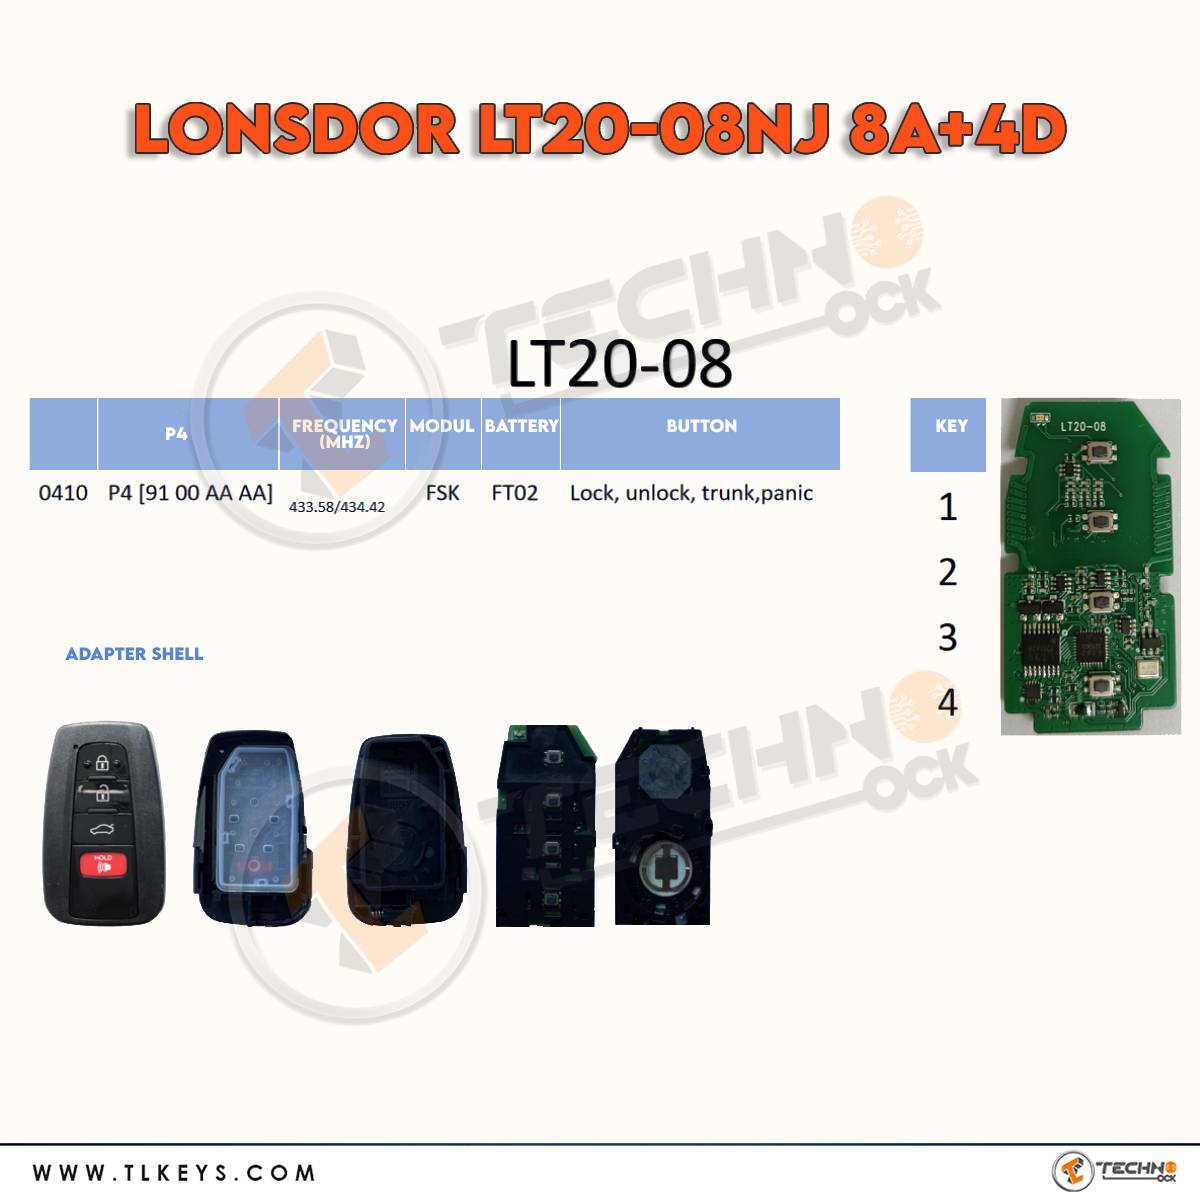  LT20-08 8A+4D update version of 8A universal smart key